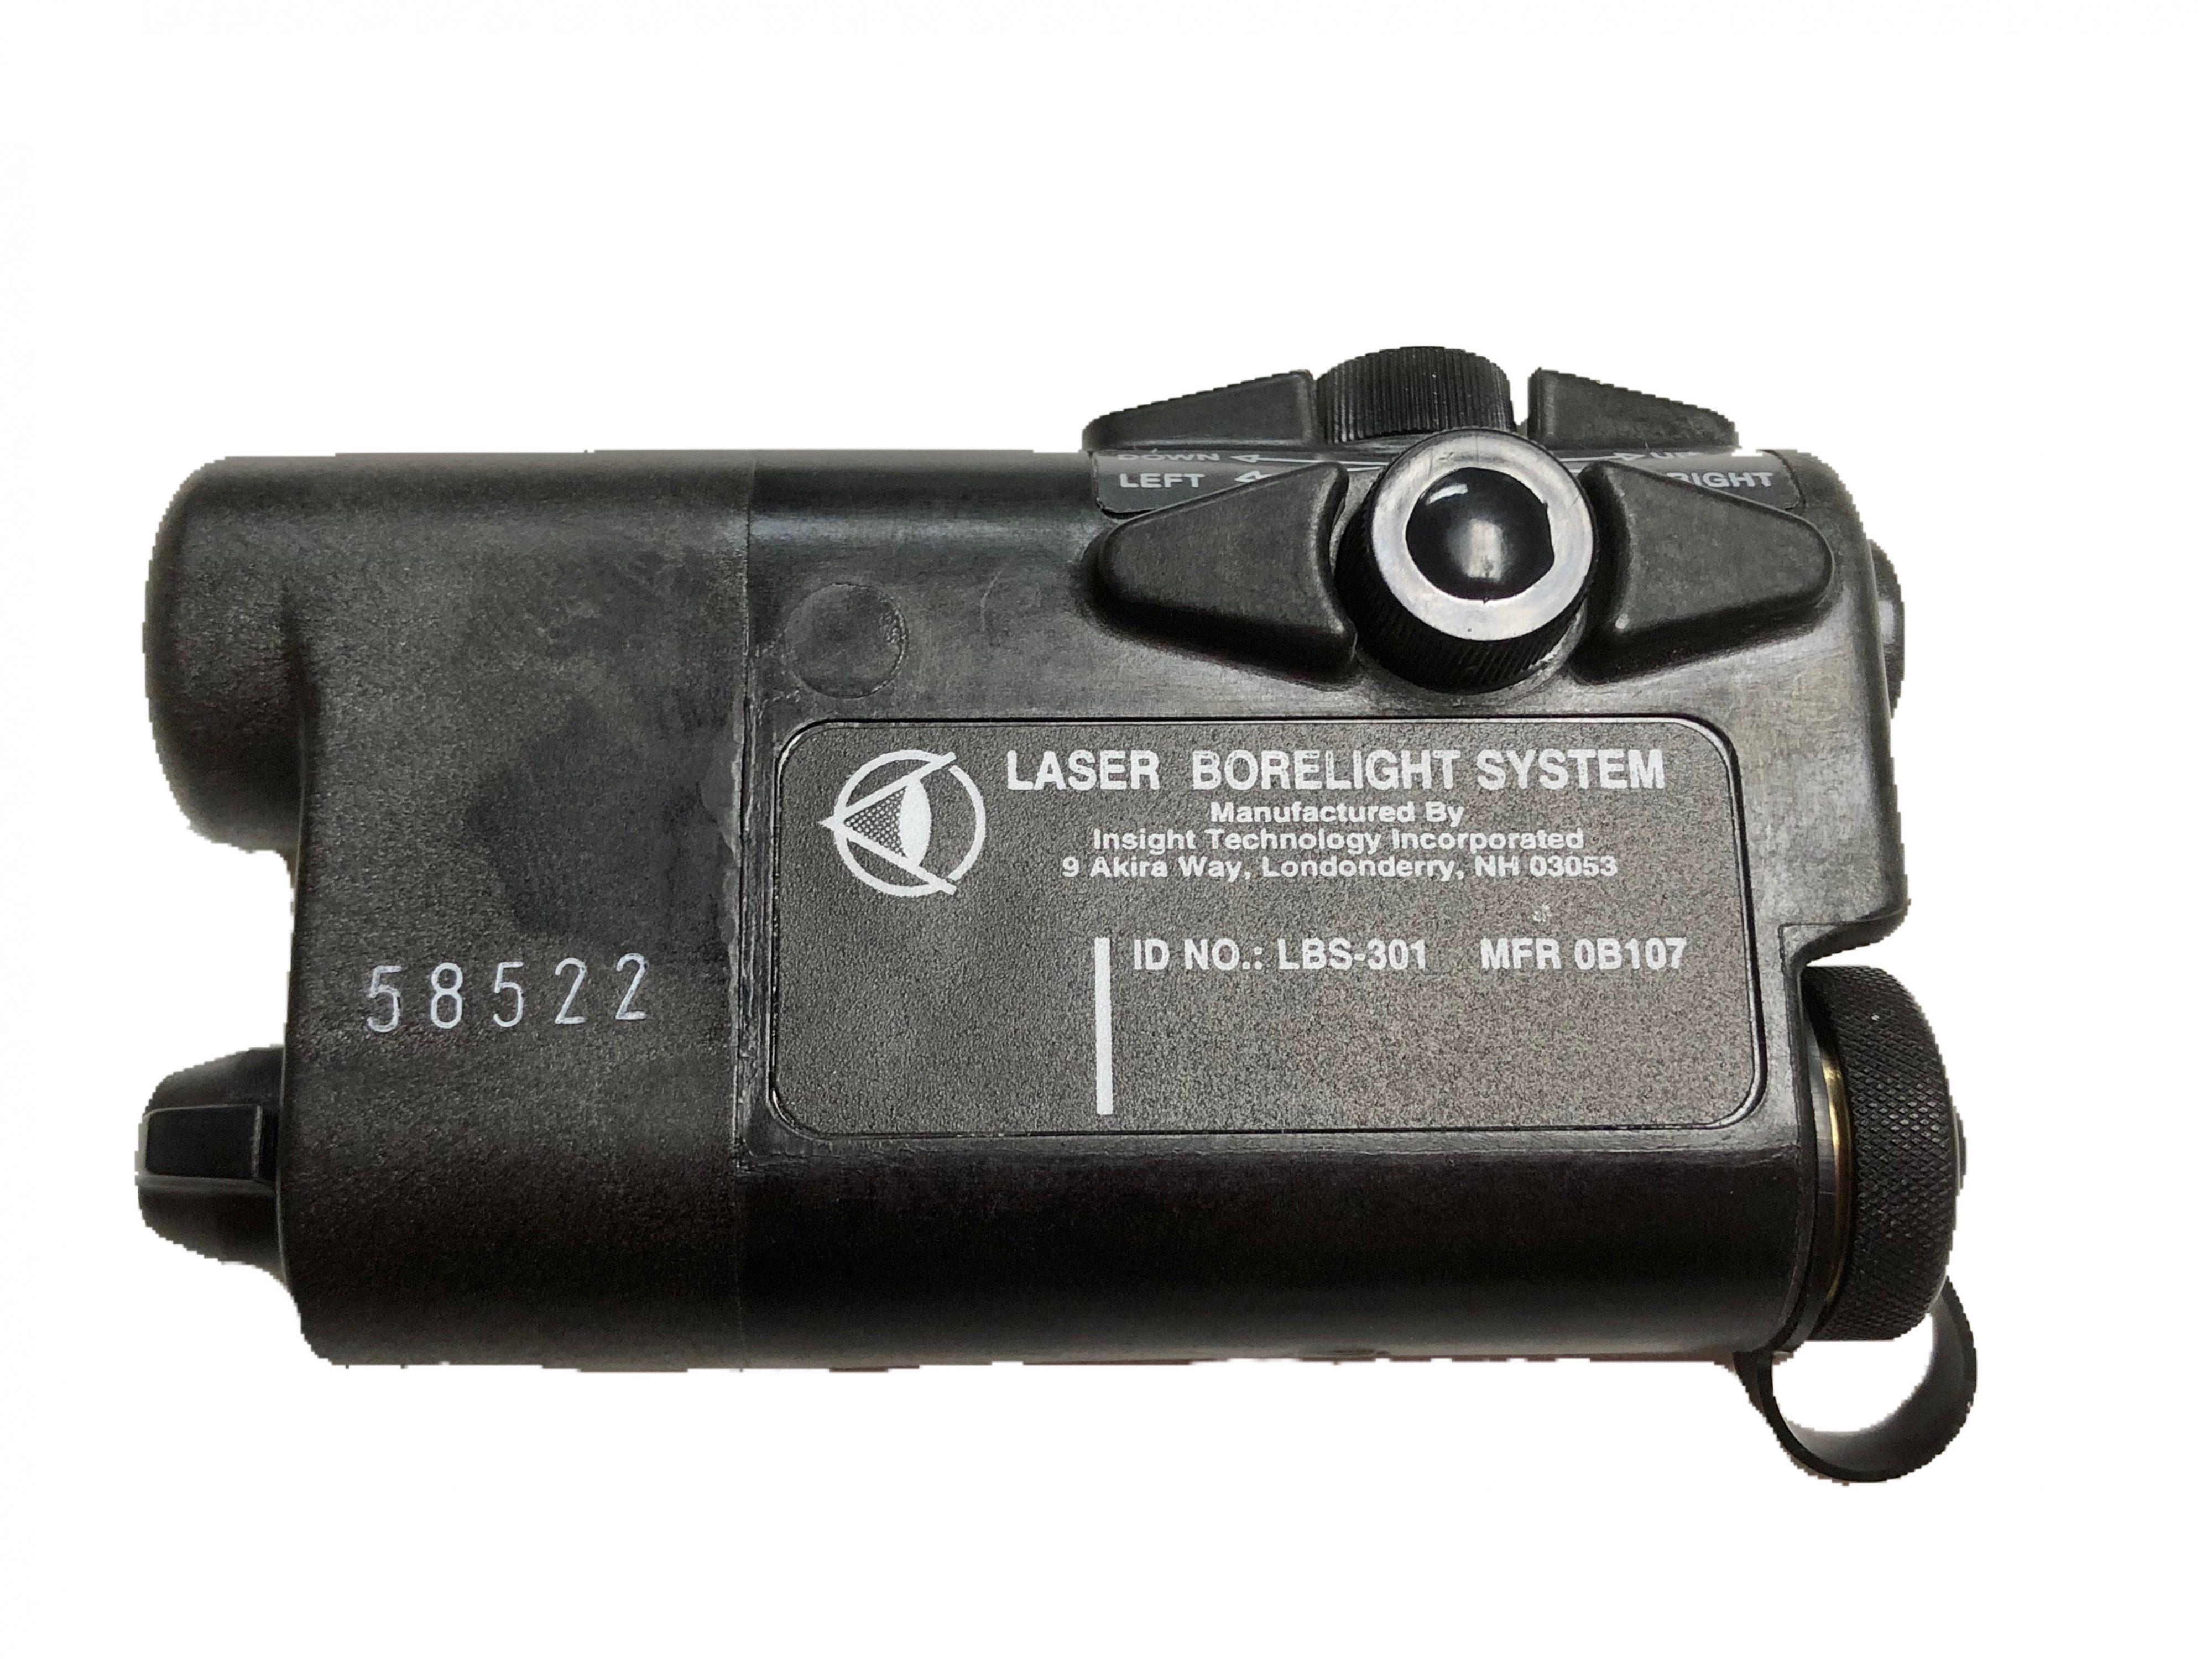 Laser Borelight System